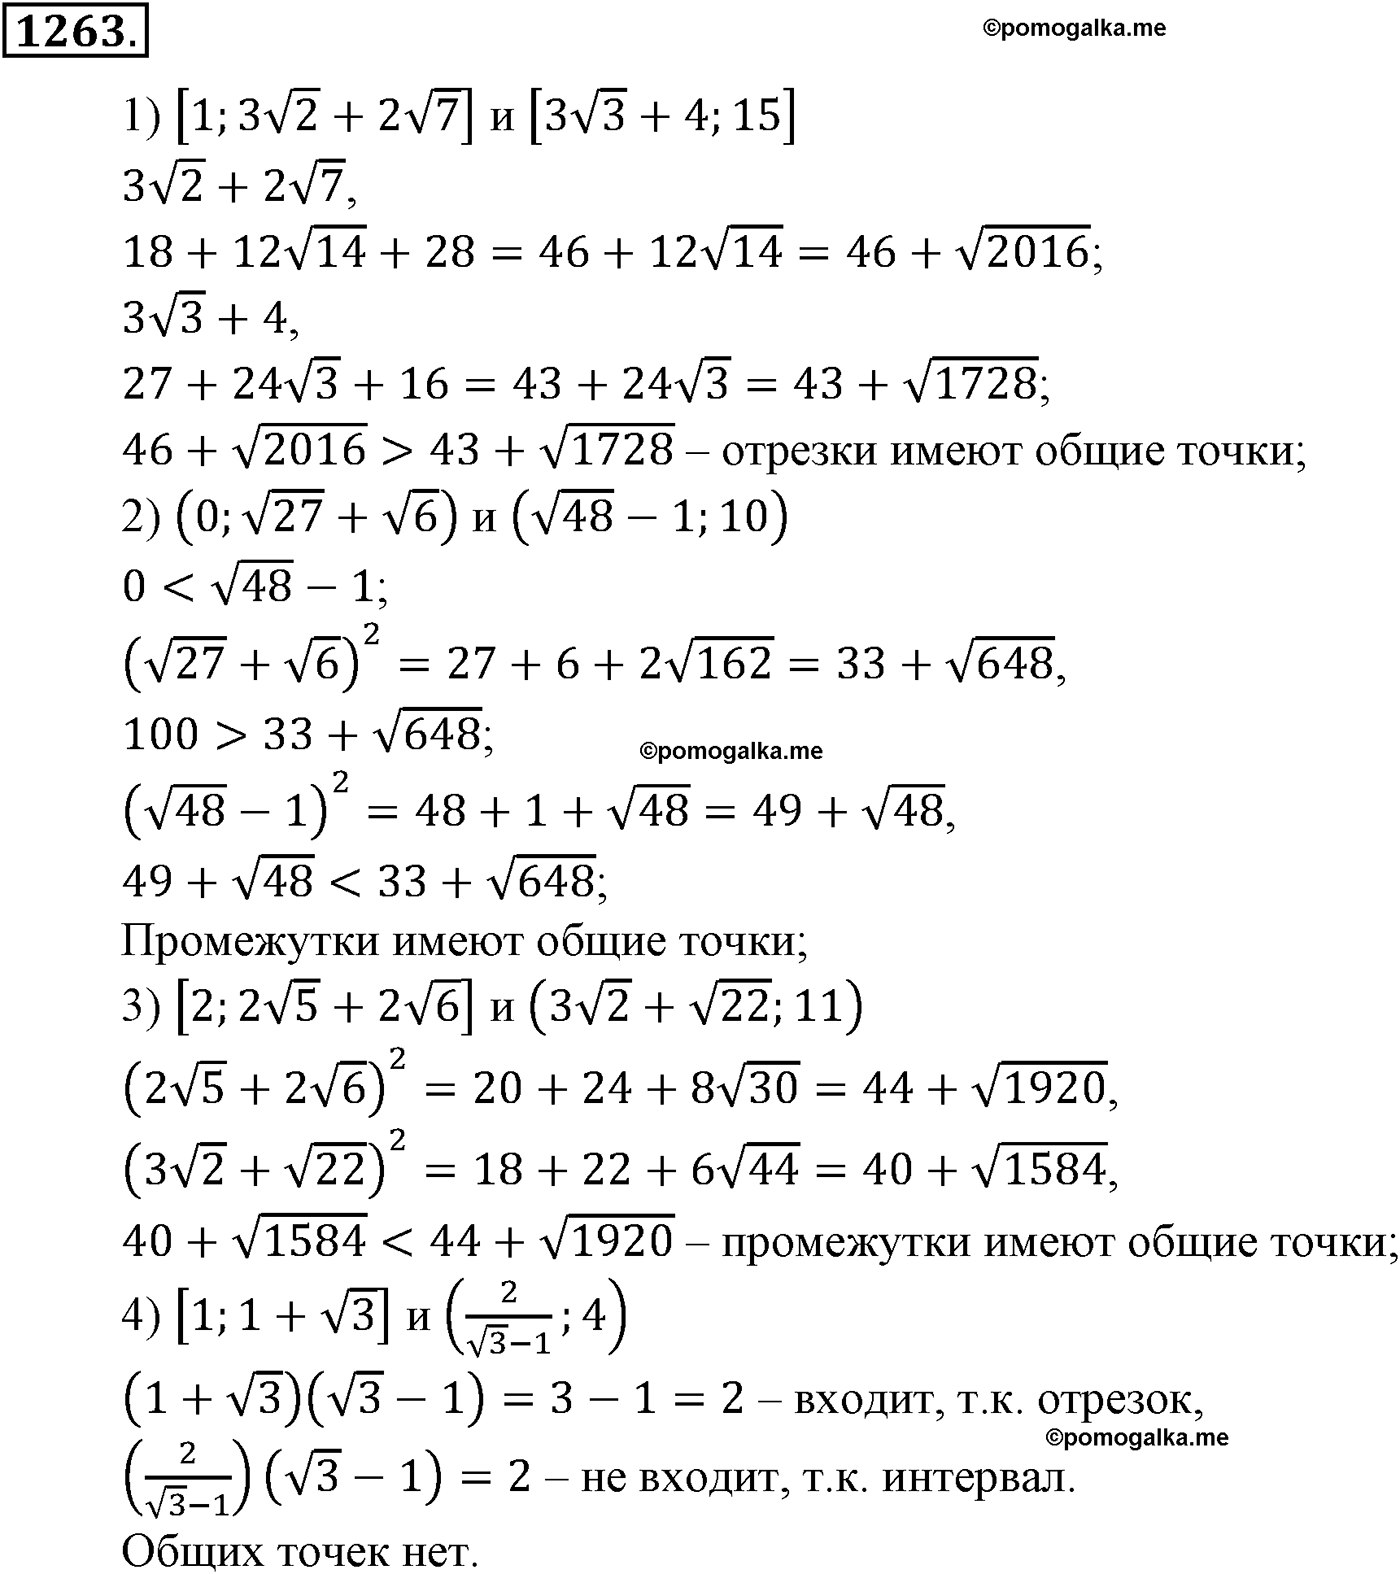 разбор задачи №1263 по алгебре за 10-11 класс из учебника Алимова, Колягина